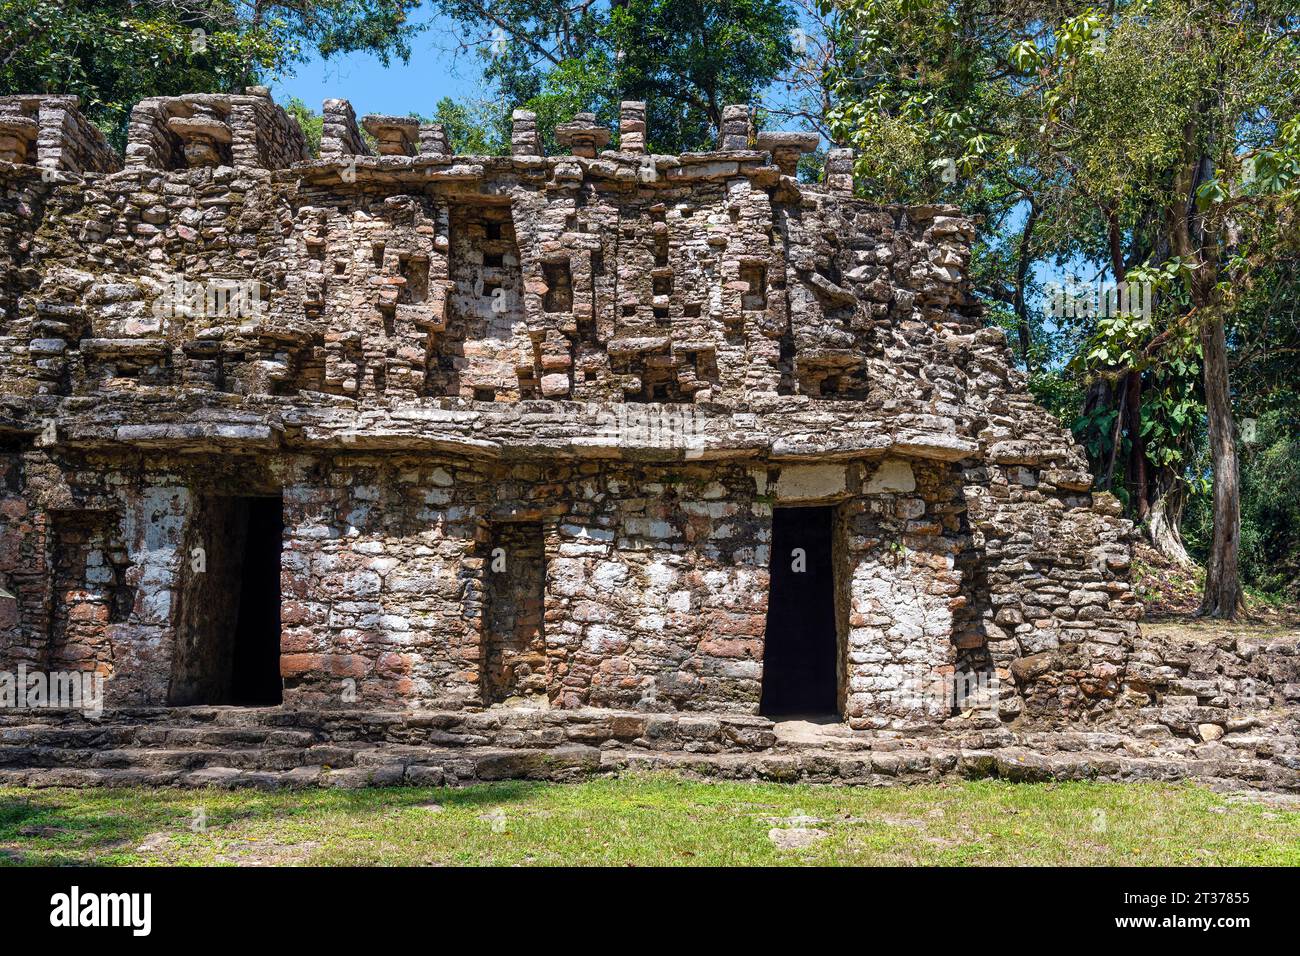 Complexe de ruines mayas de Yaxchilan avec un gros plan sur la structure connue sous le nom de labyrinthe ou structure 19 situé dans la forêt tropicale humide, Chiapas, Mexique. Banque D'Images